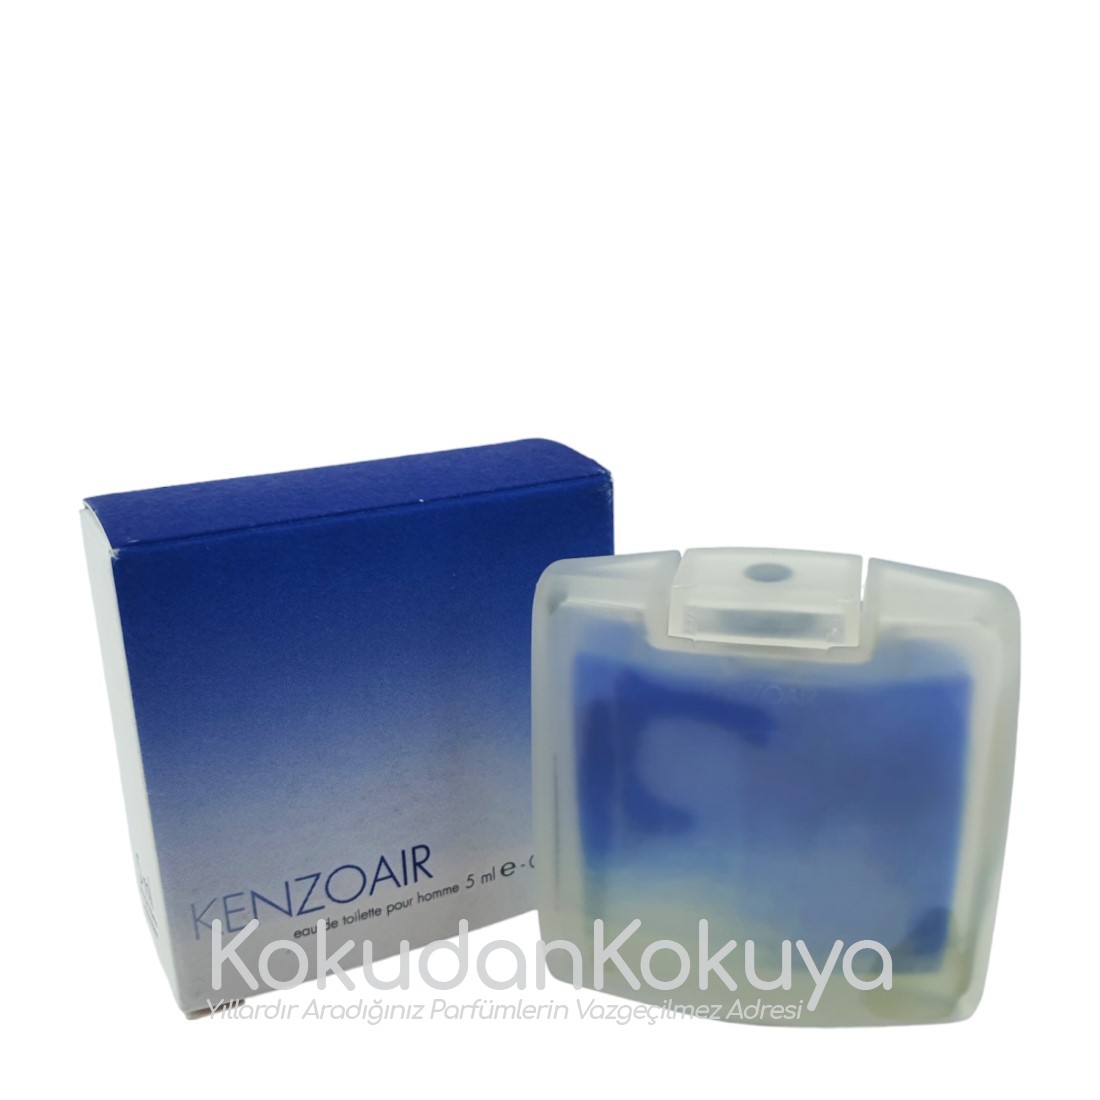 KENZO Air (Vintage) Parfüm Erkek 5ml Eau De Toilette (EDT) Dökme 